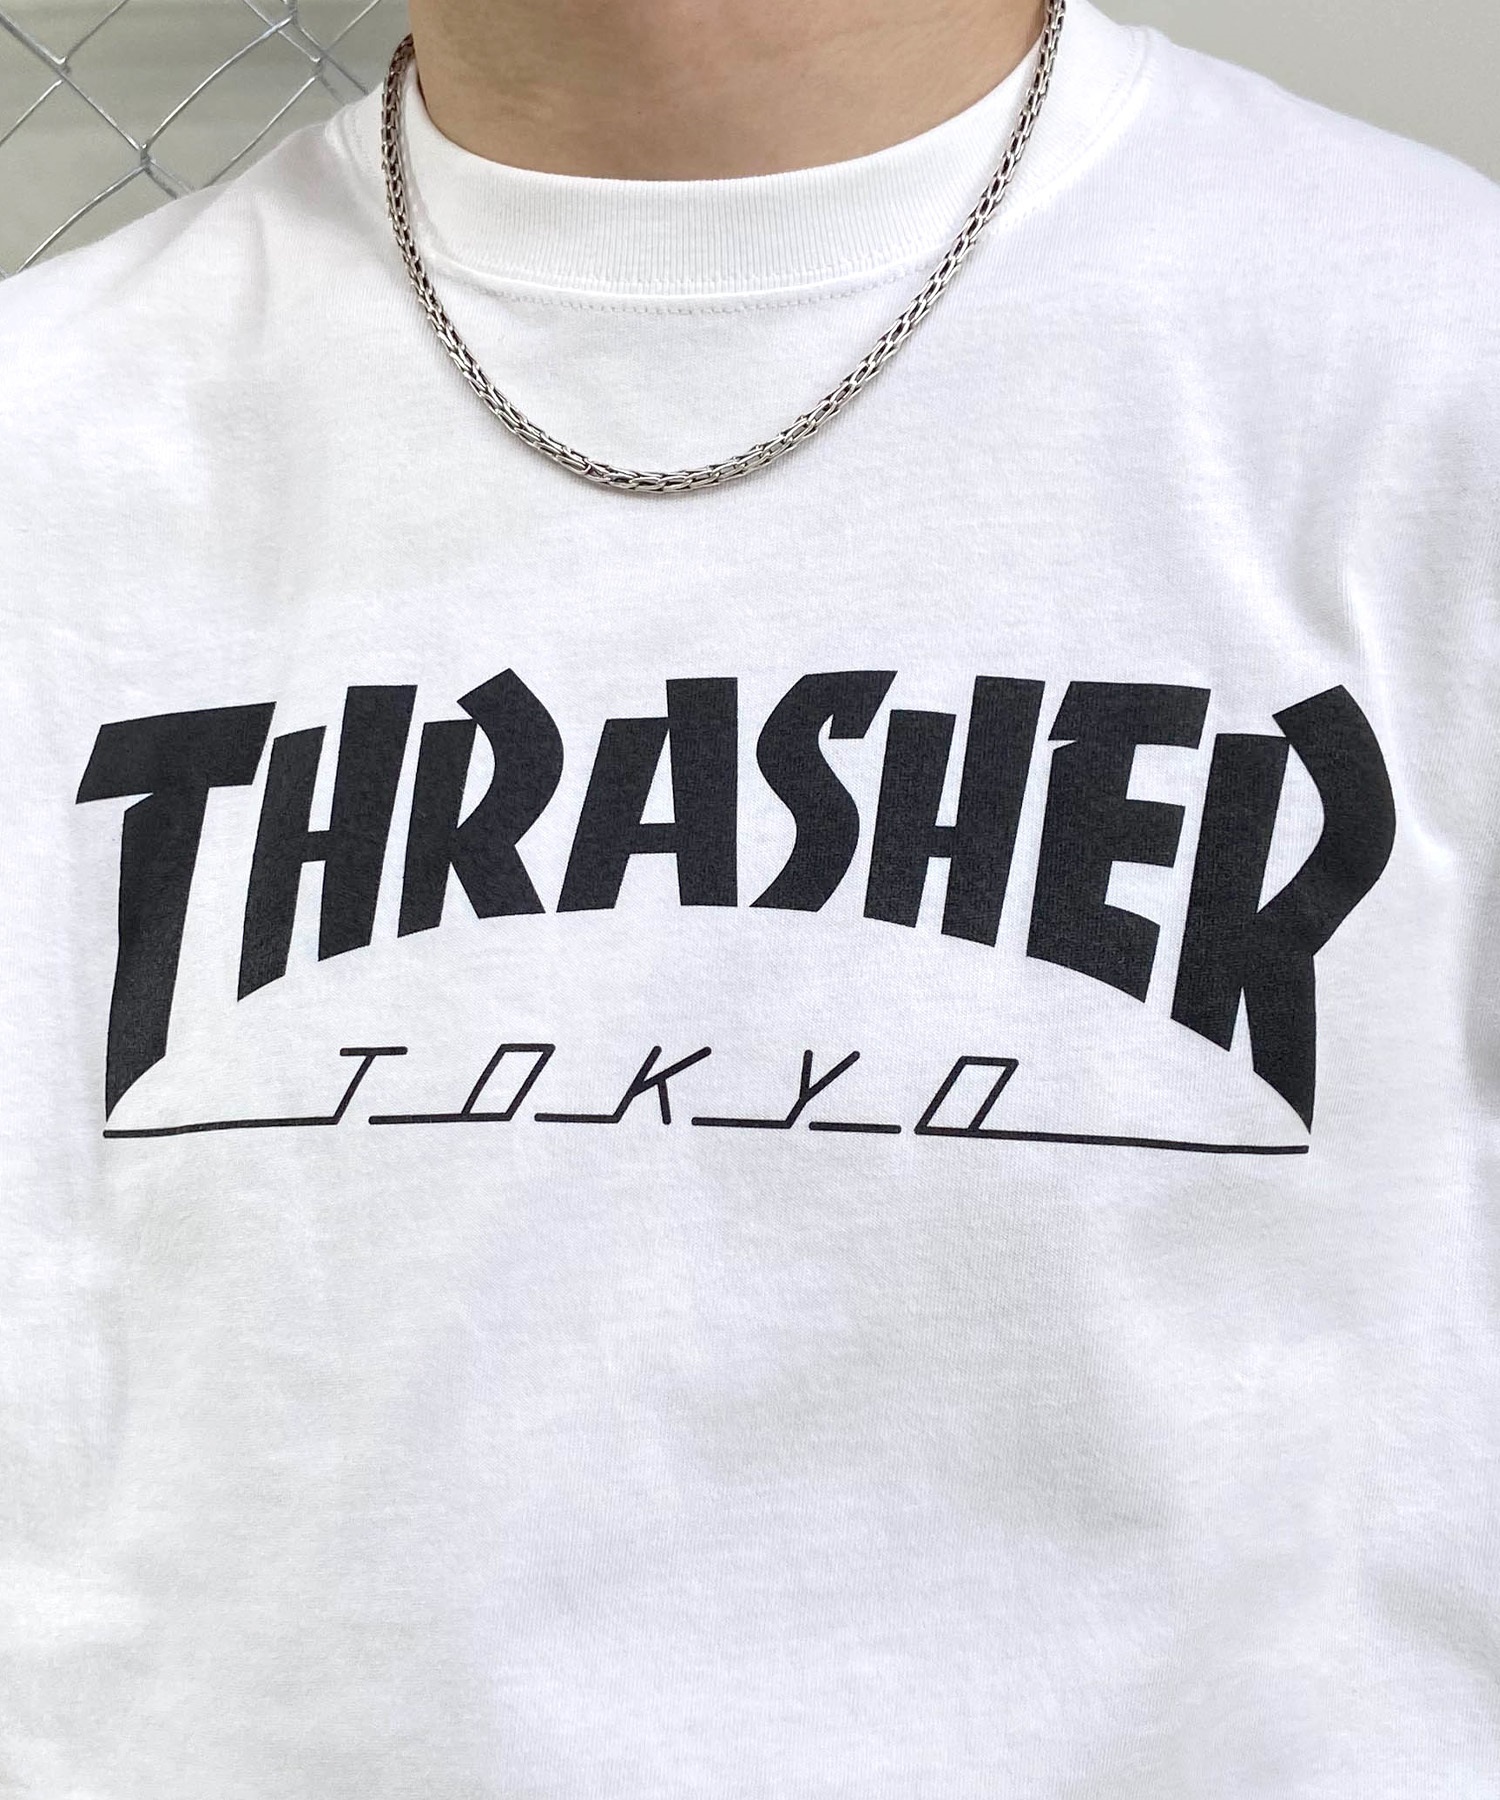 【マトメガイ対象】THRASHER スラッシャー TOKYOロゴ TH91419-TOKYO メンズ 半袖 Tシャツ ムラサキスポーツ限定(BLK-M)